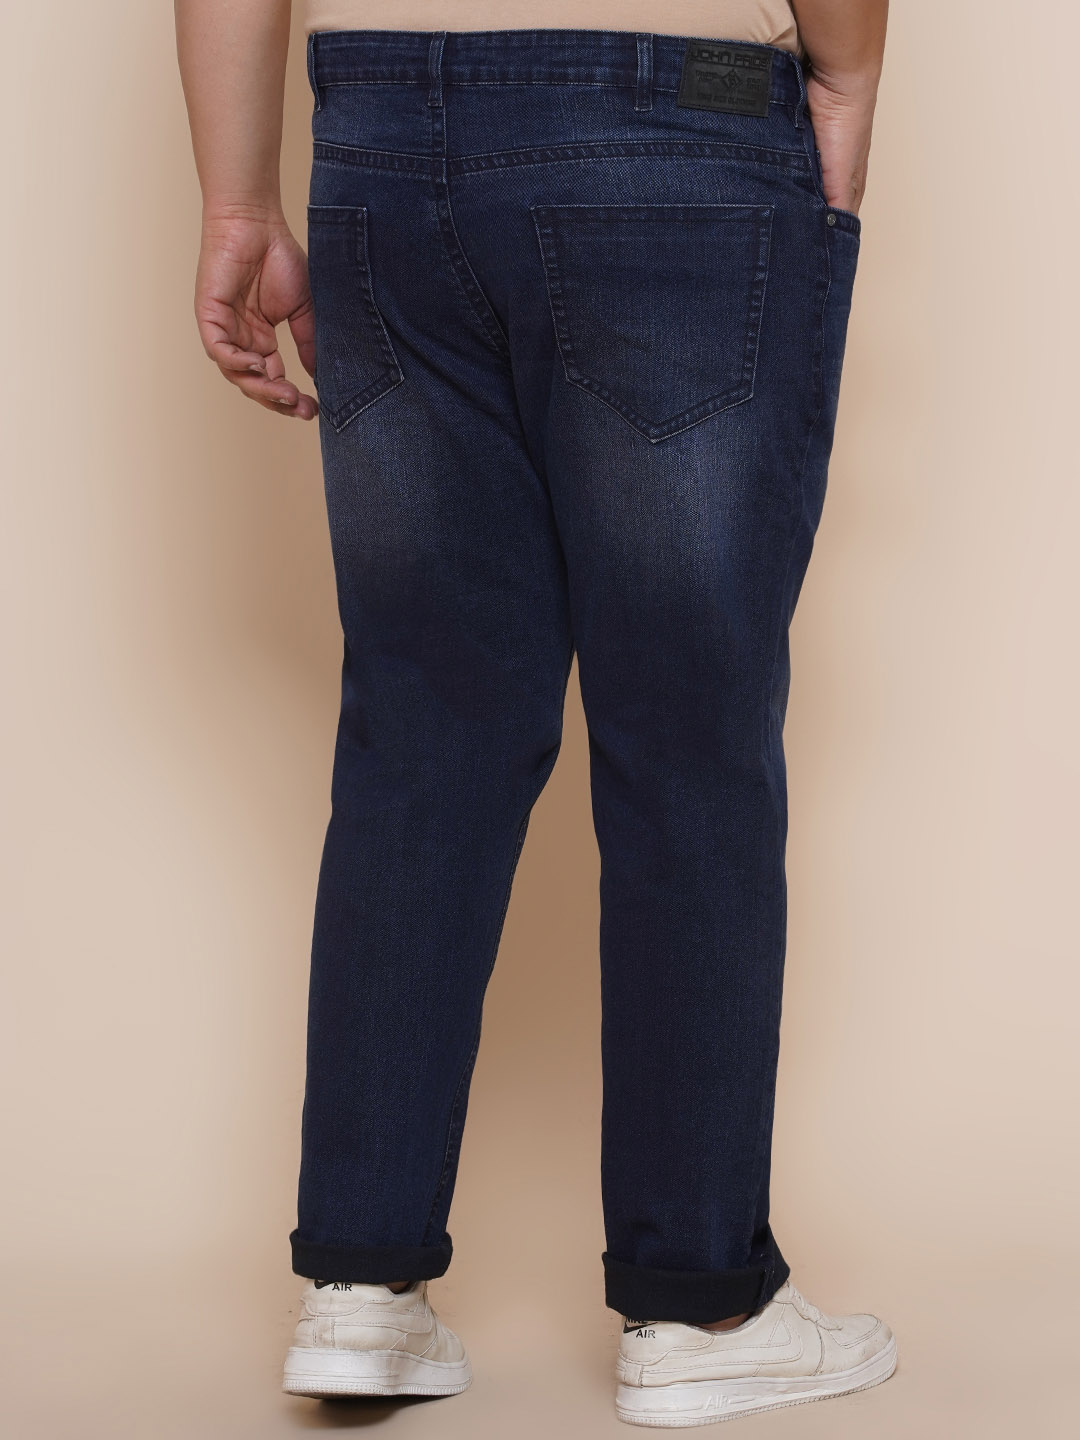 bottomwear/jeans/JPJ12284/jpj12284-5.jpg